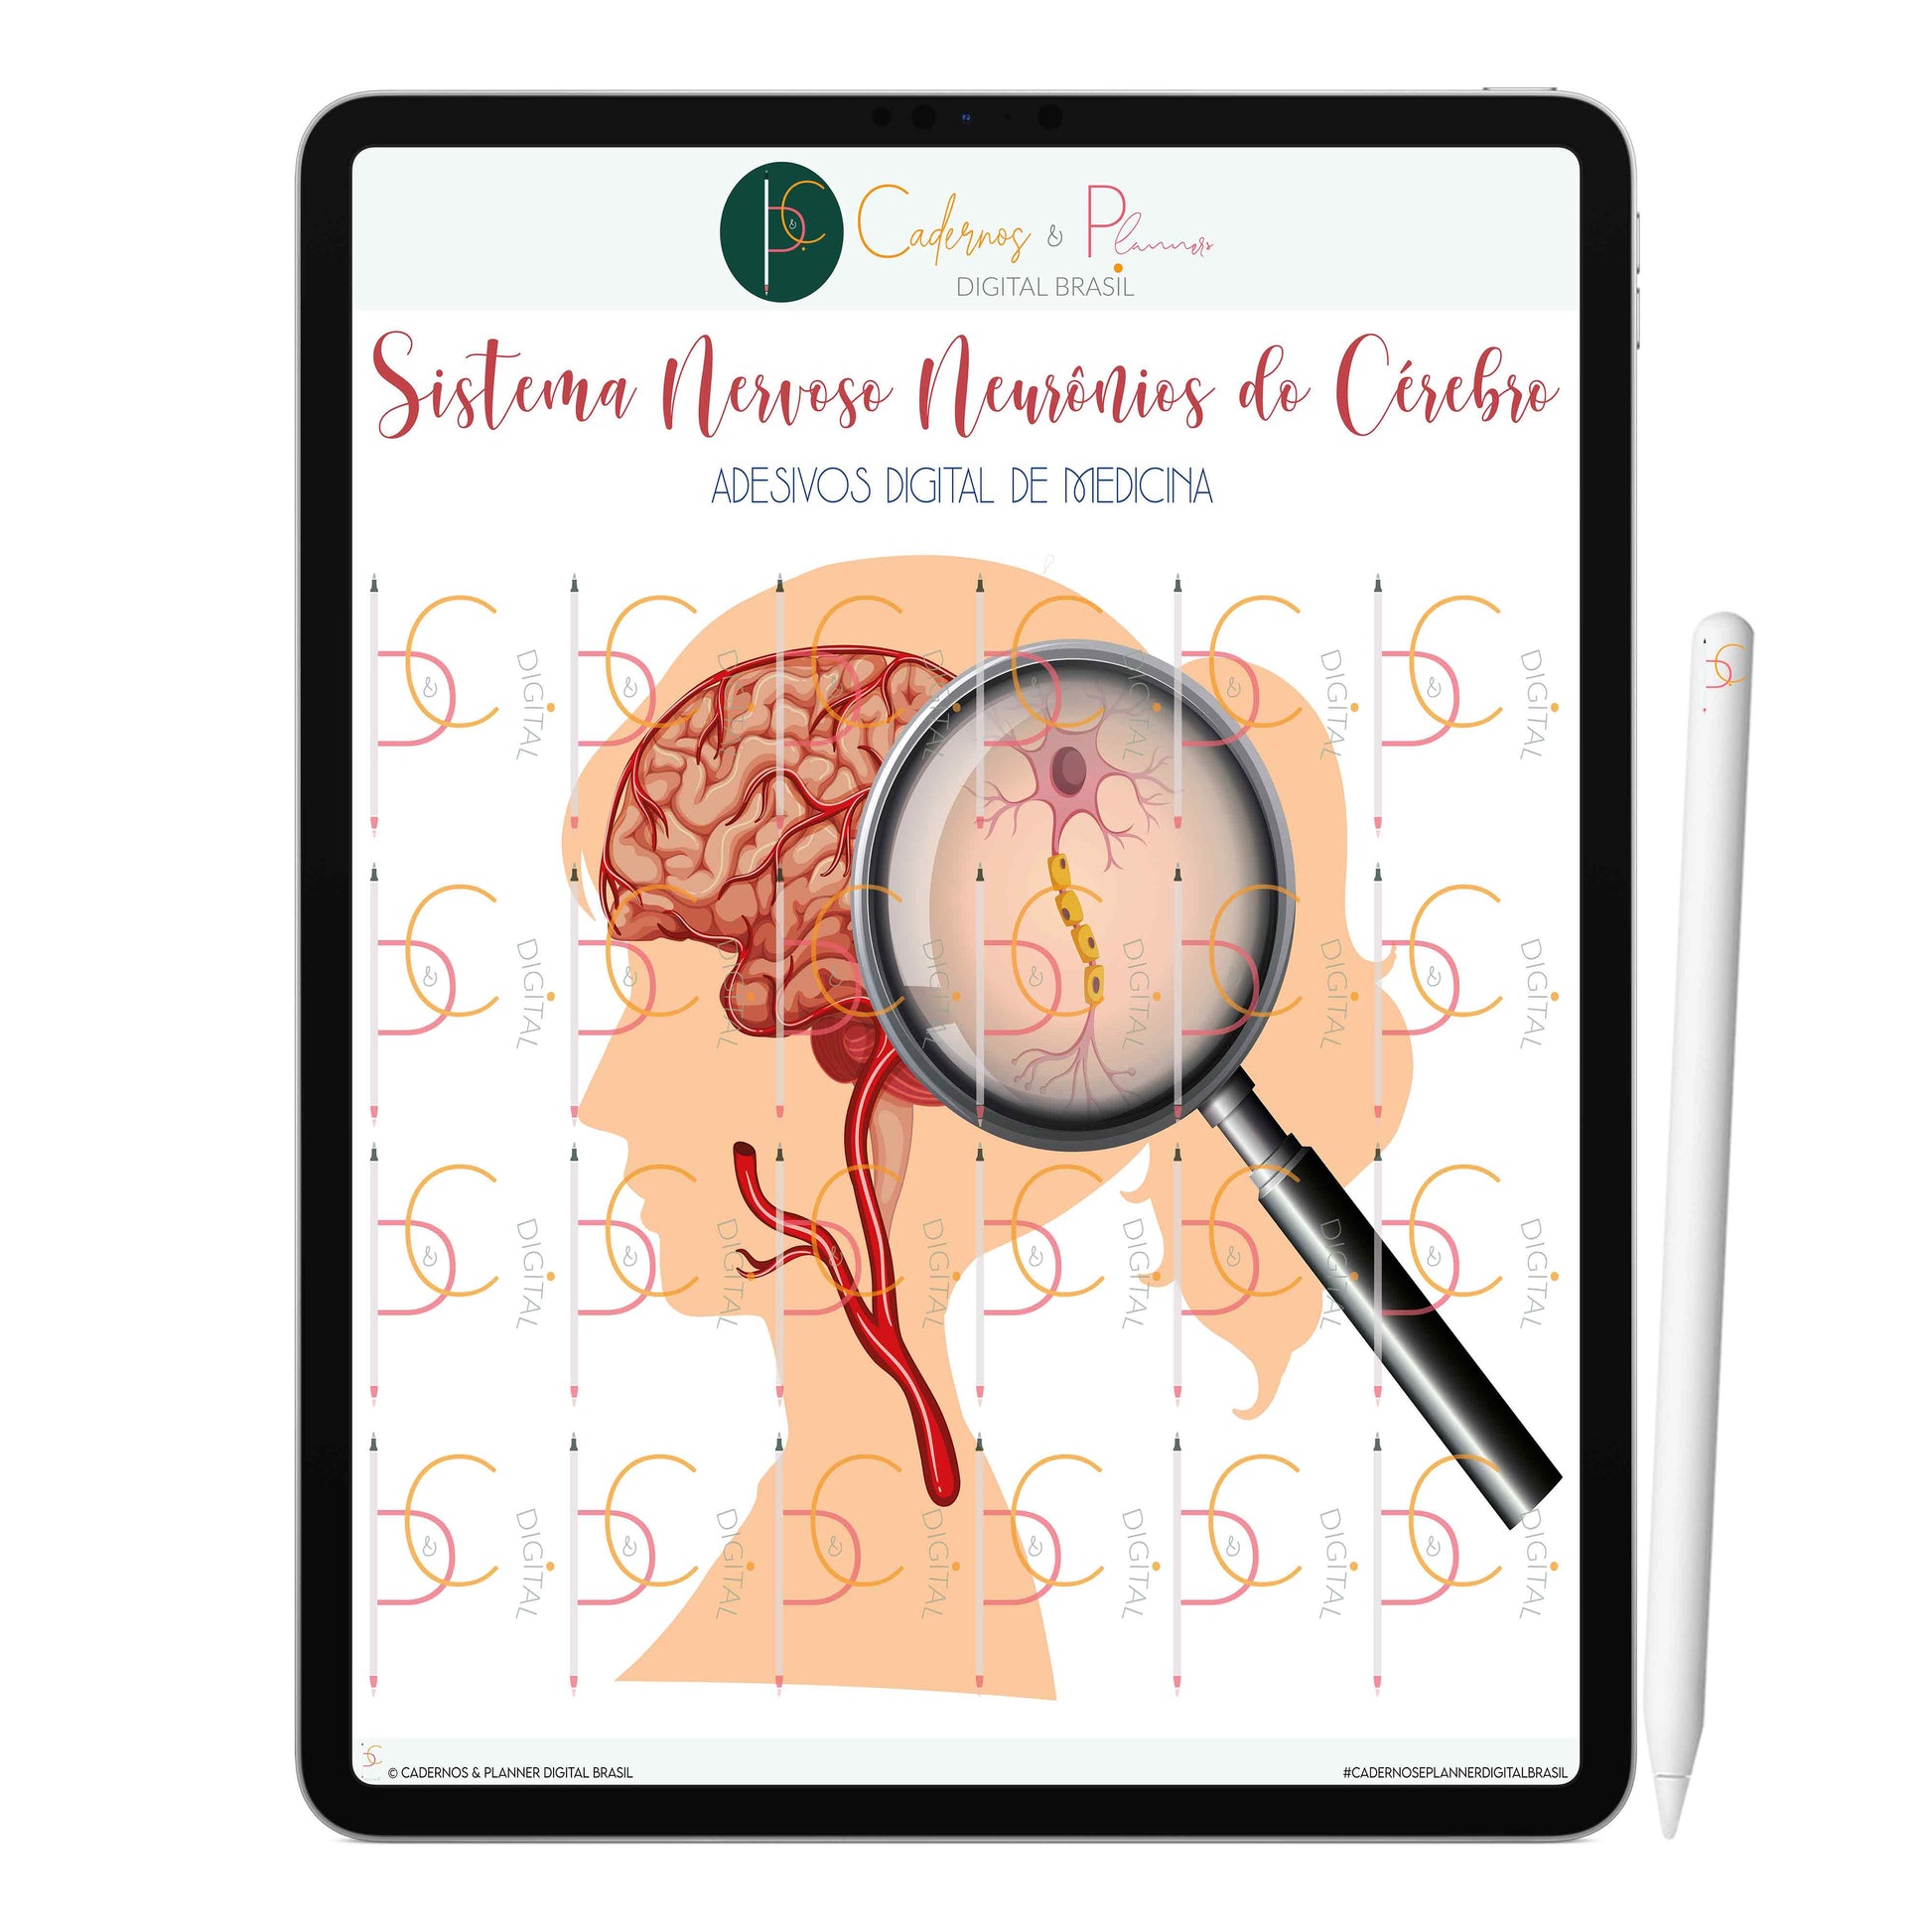 Adesivos Digital de Medicina - Sistema Nervoso Células e Neurônios do Cérebro • iPad Tablet • GoodNotes Noteshelf